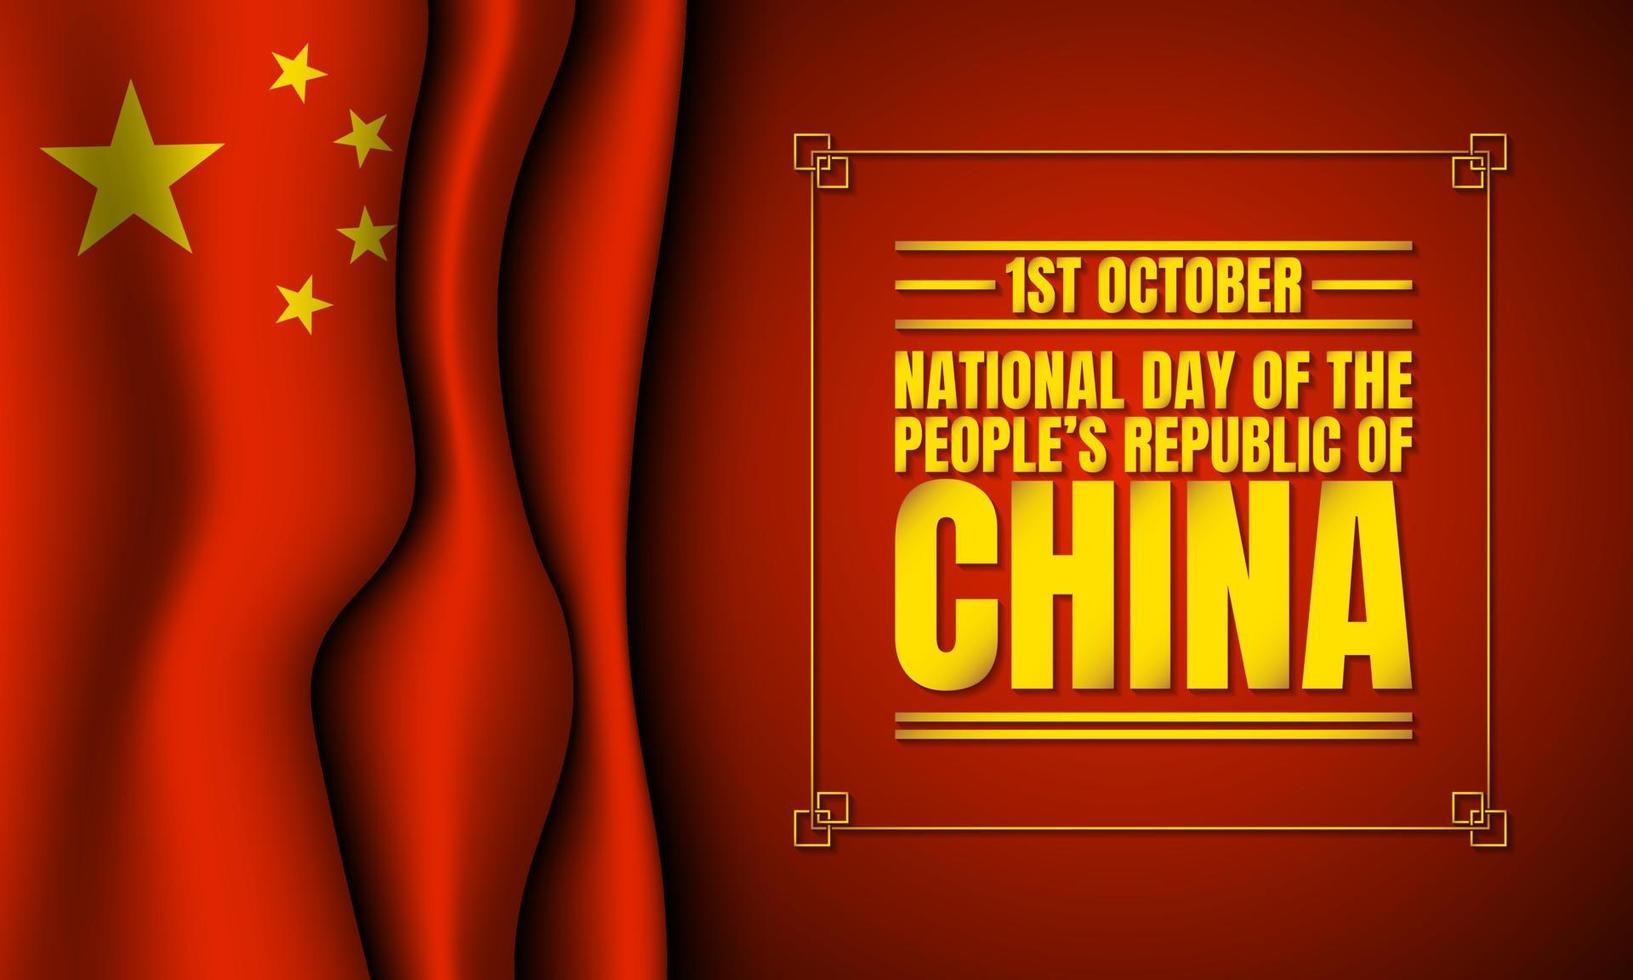 nazionale giorno di il persone repubblica di Cina. vettore